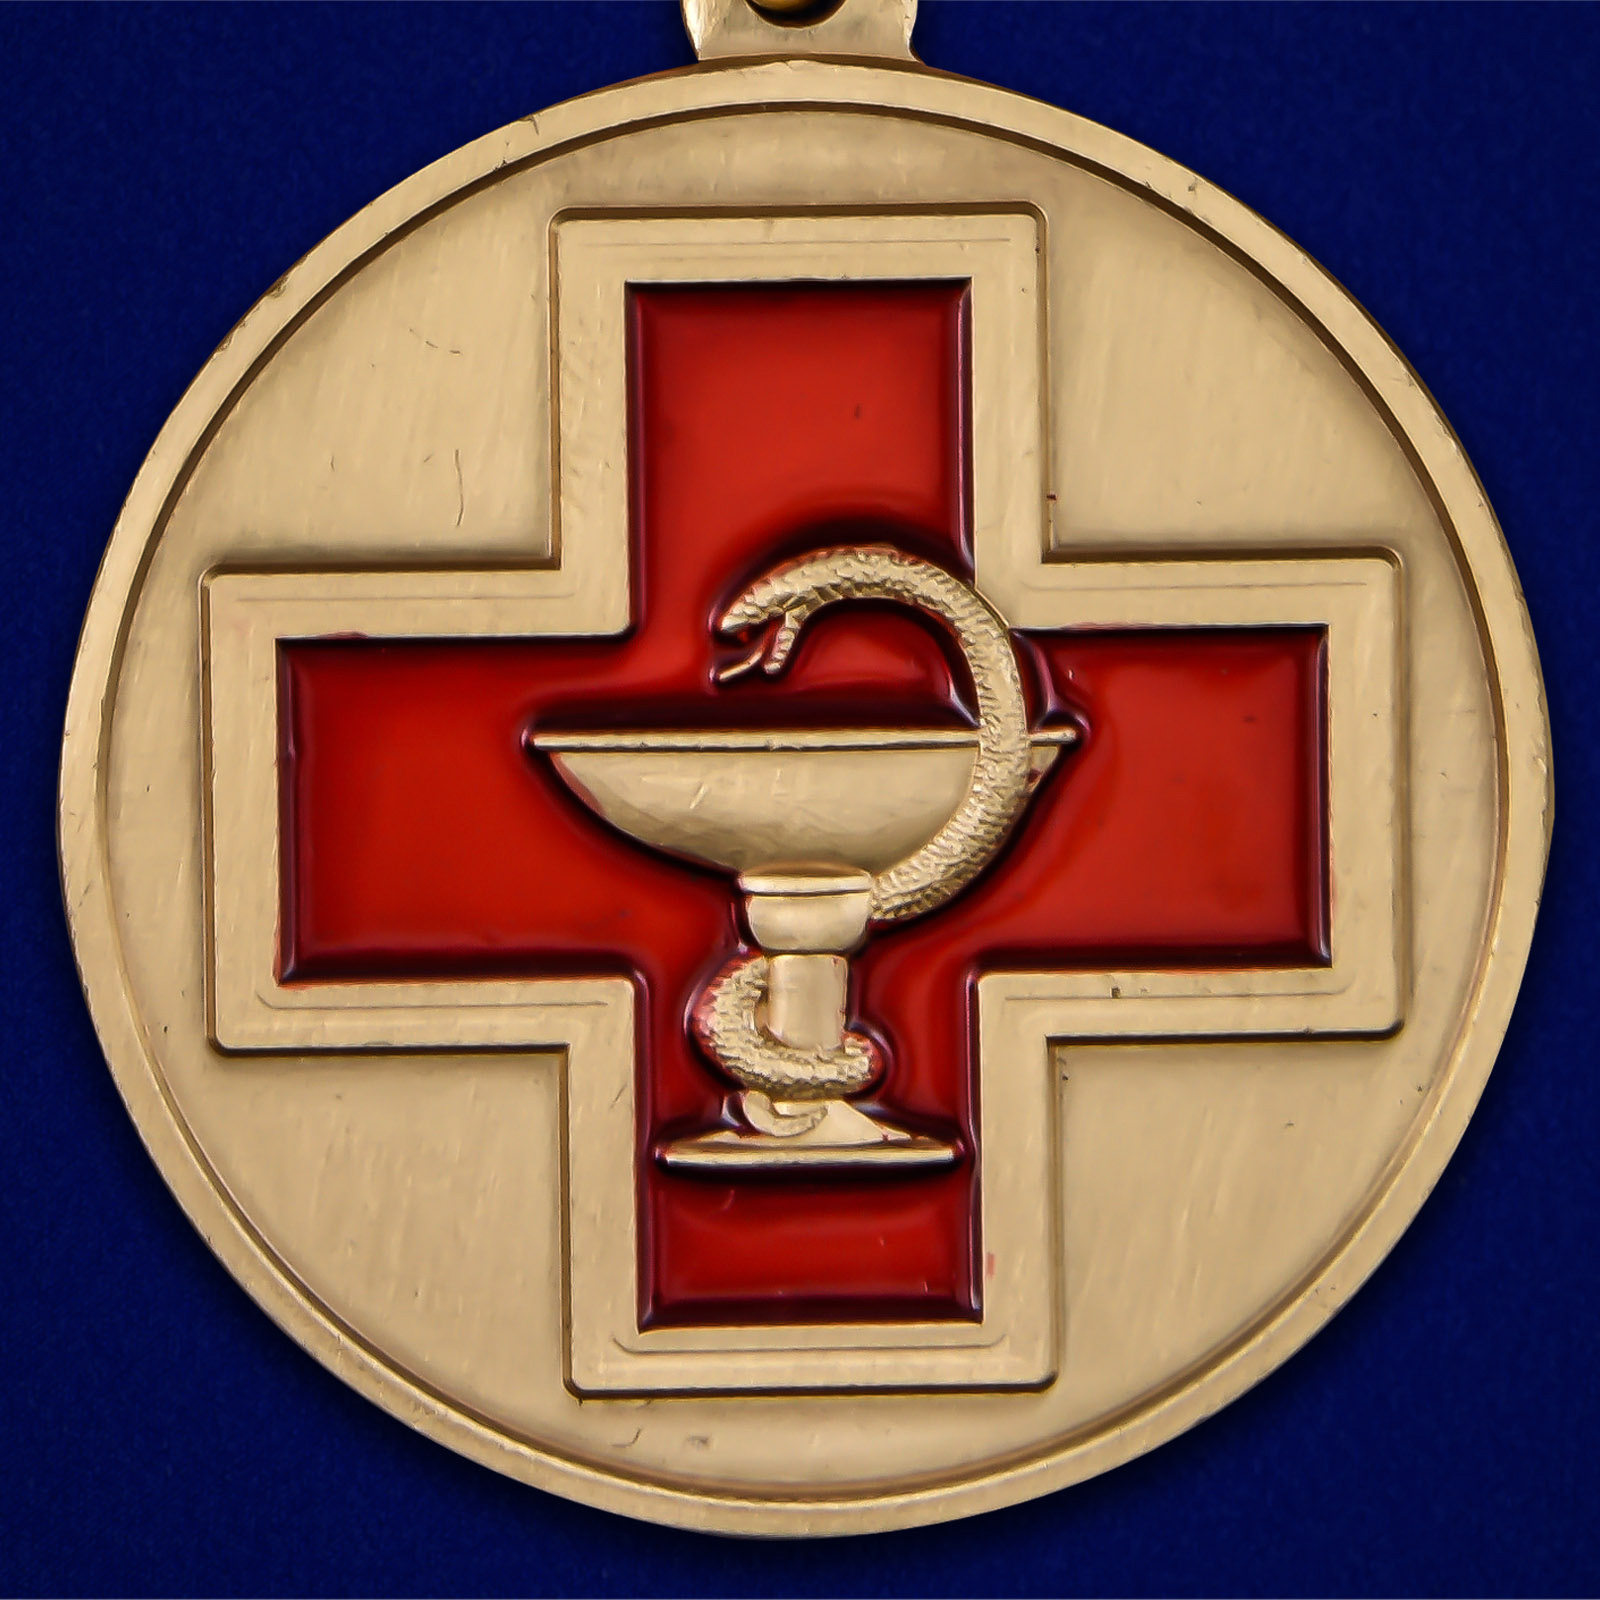 Латунная медаль "За заслуги в медицине" 